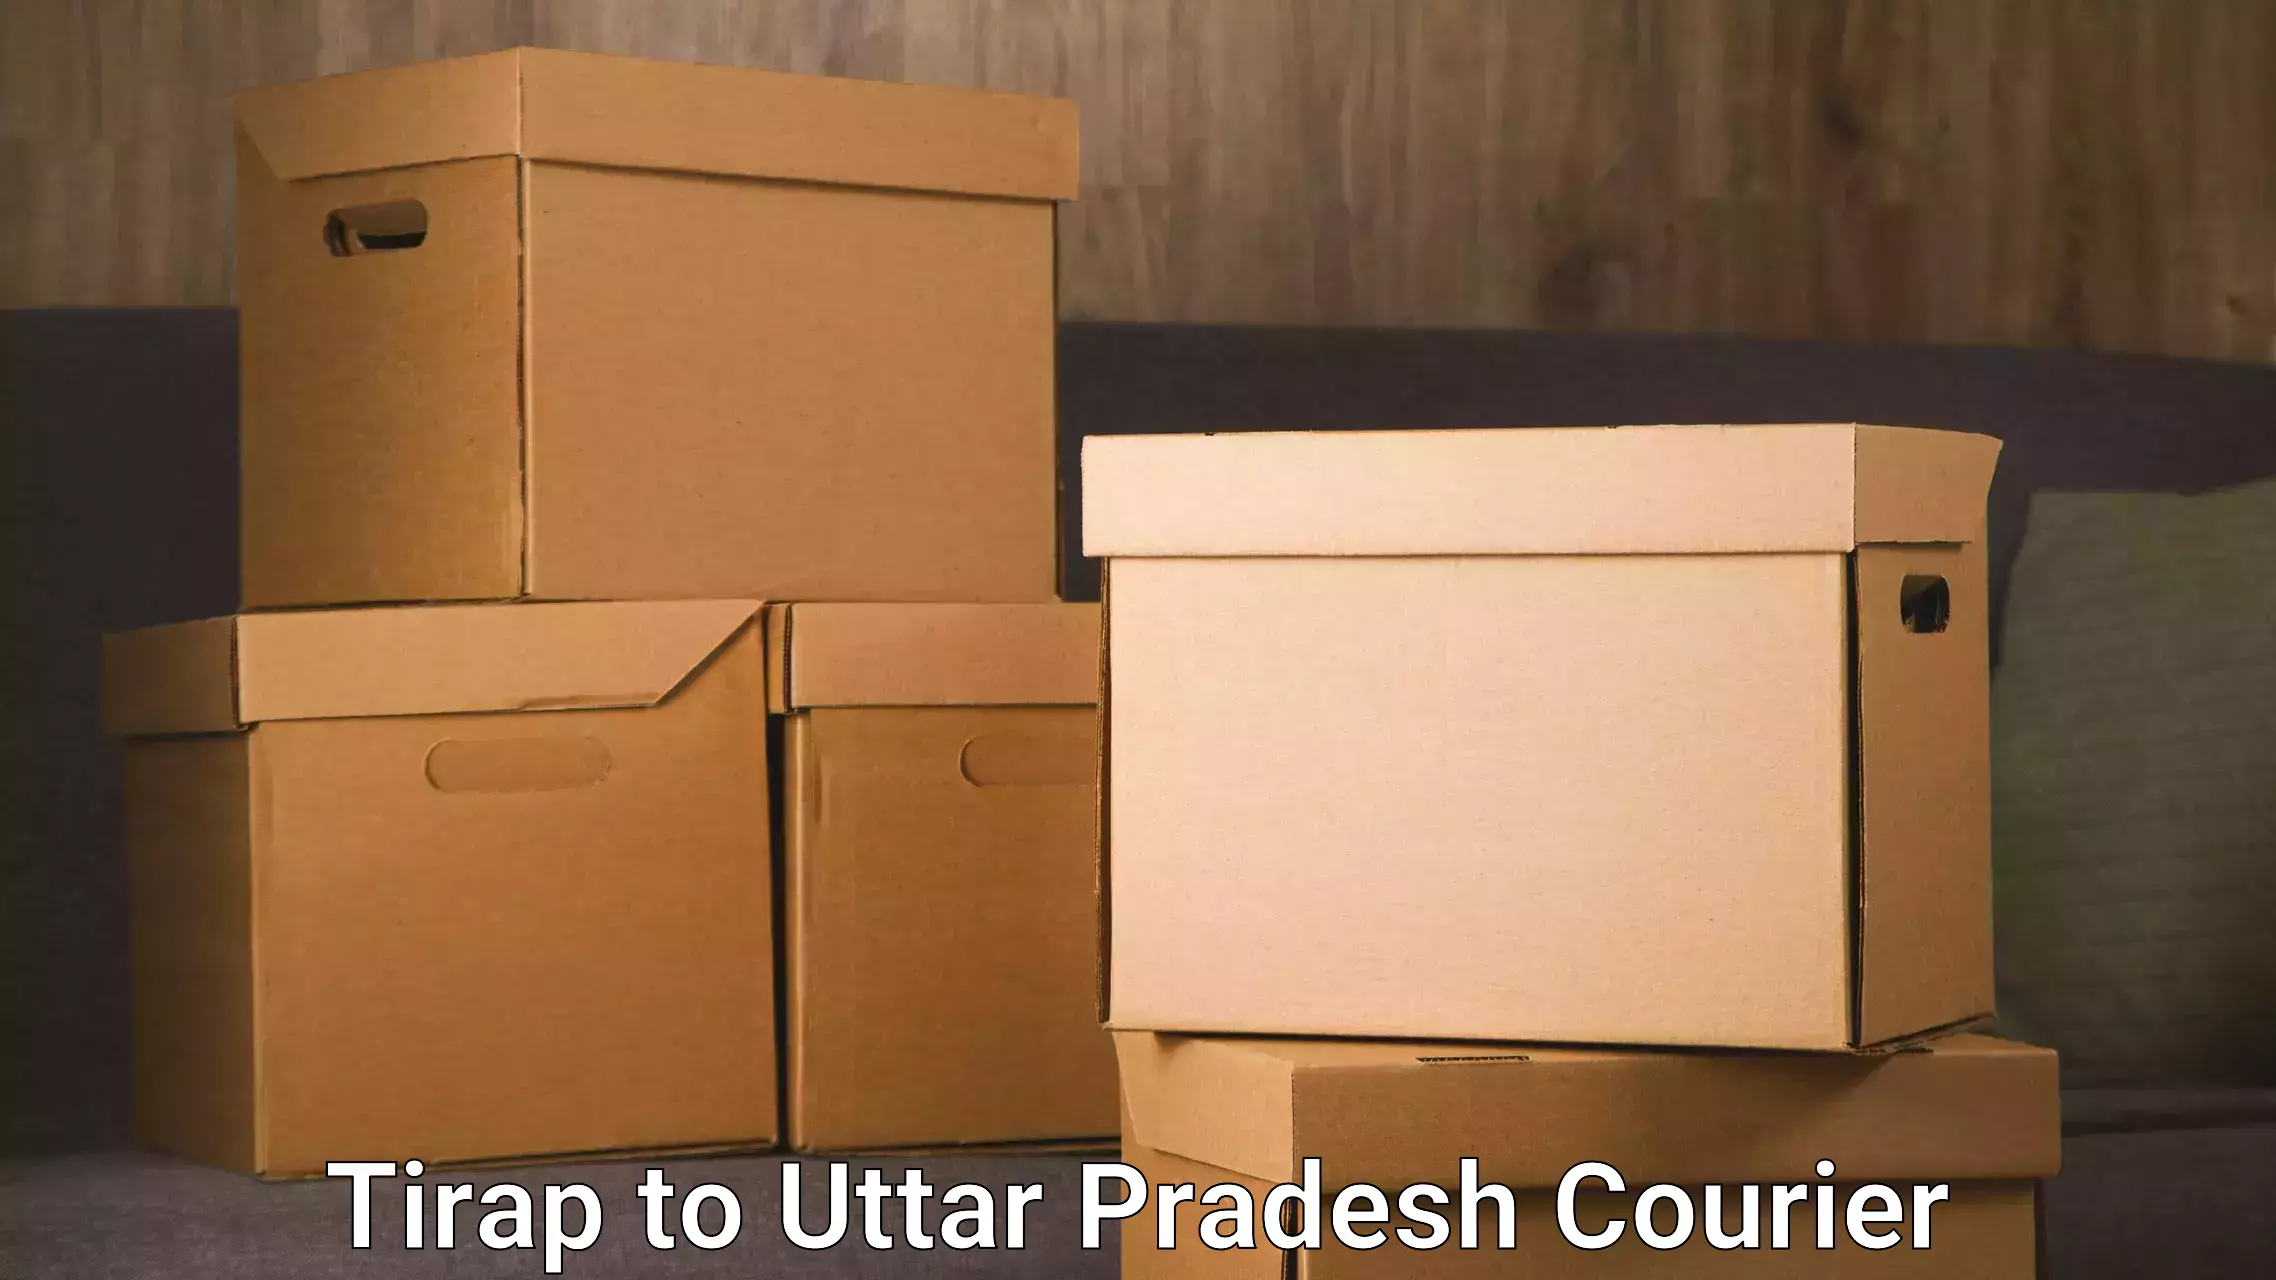 Cost-effective courier options Tirap to Ambedkar Nagar